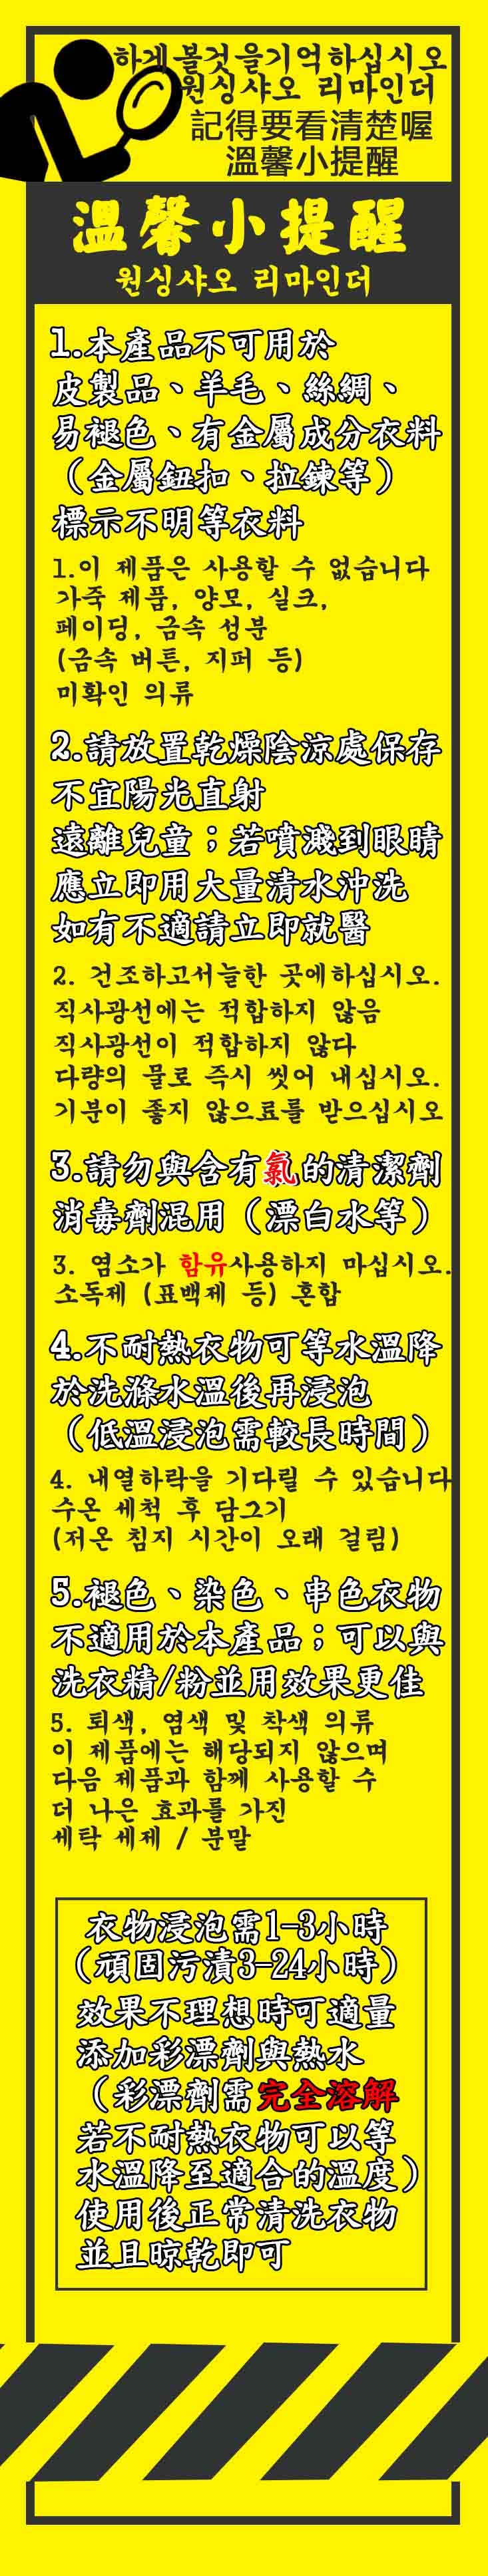 韓國熱銷強效去污增豔洗淨粉(8入組)